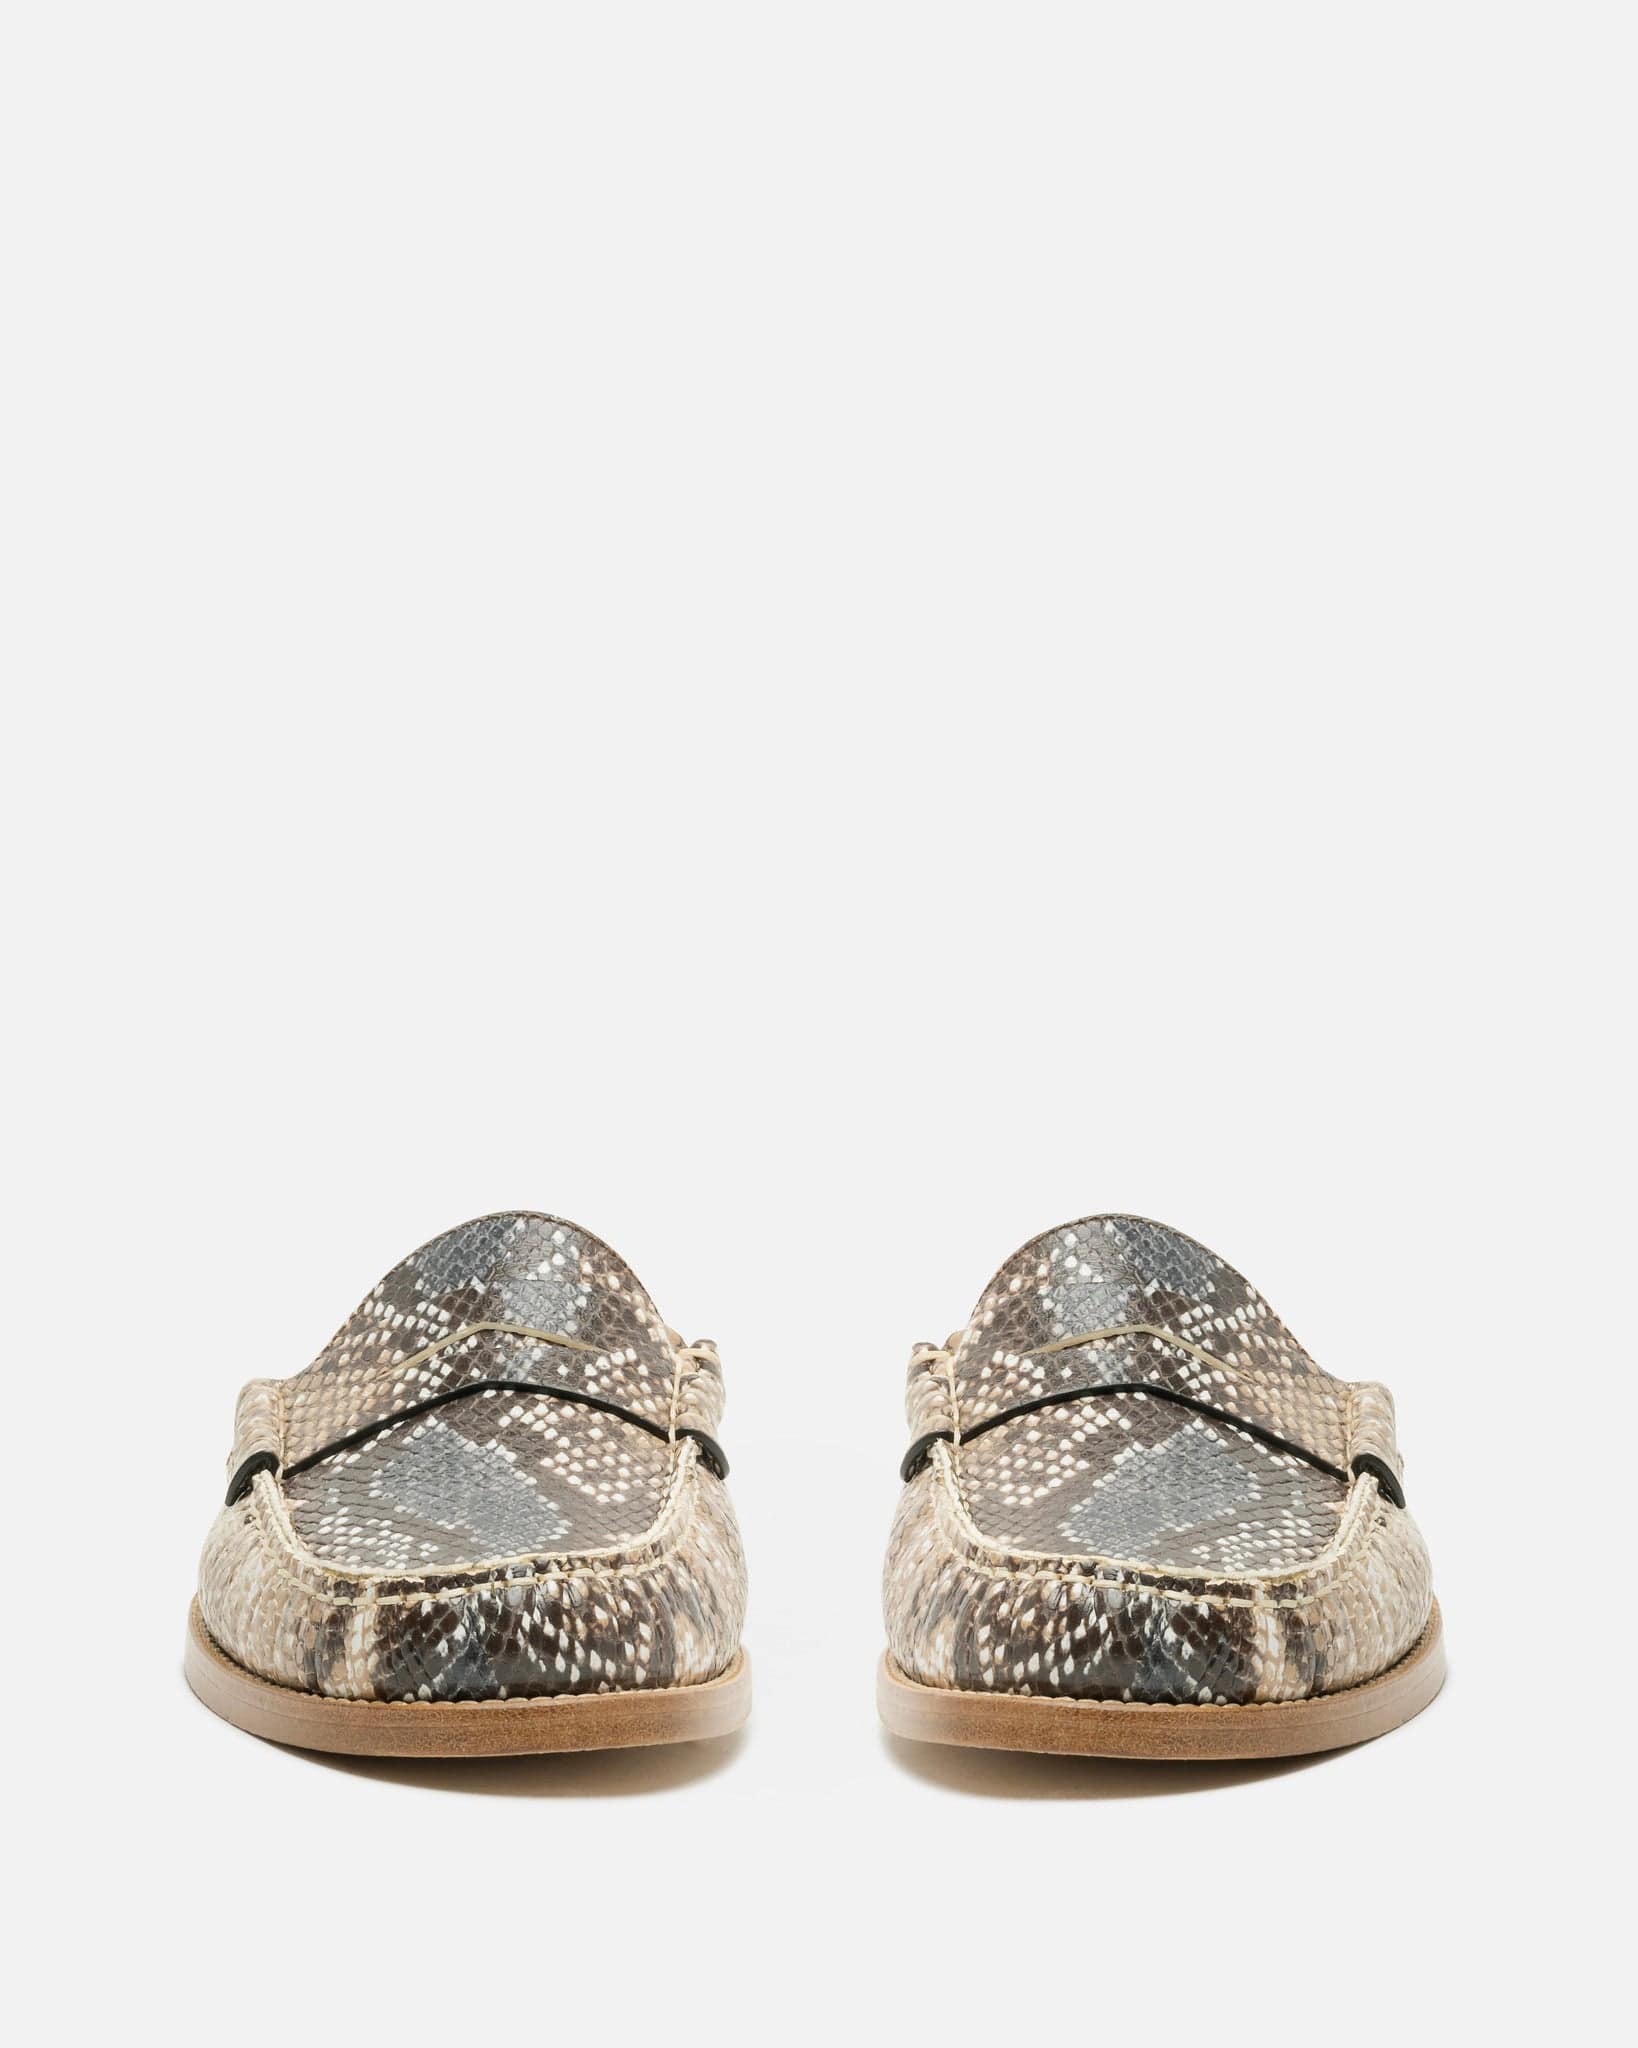 Rhude Men's Shoes Backless Snakeskin Loafer in Snake